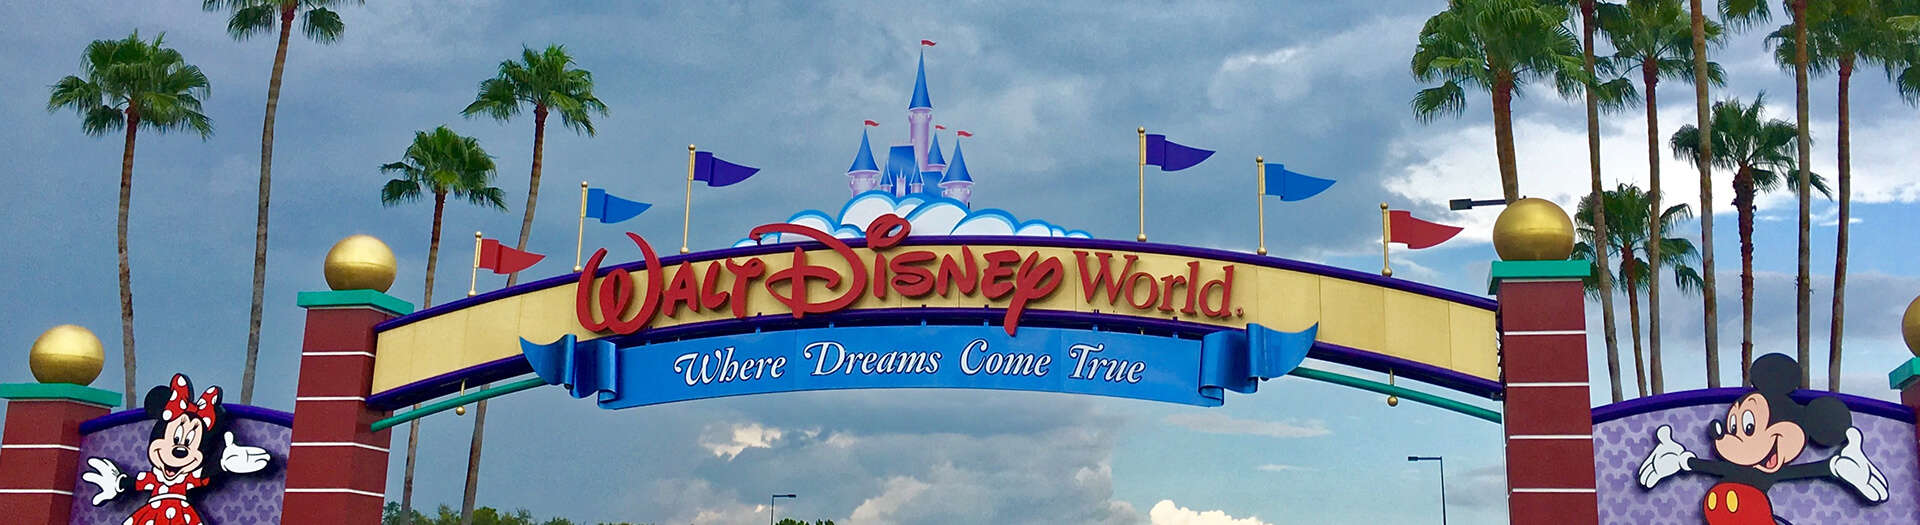 Walt Disney World Banner